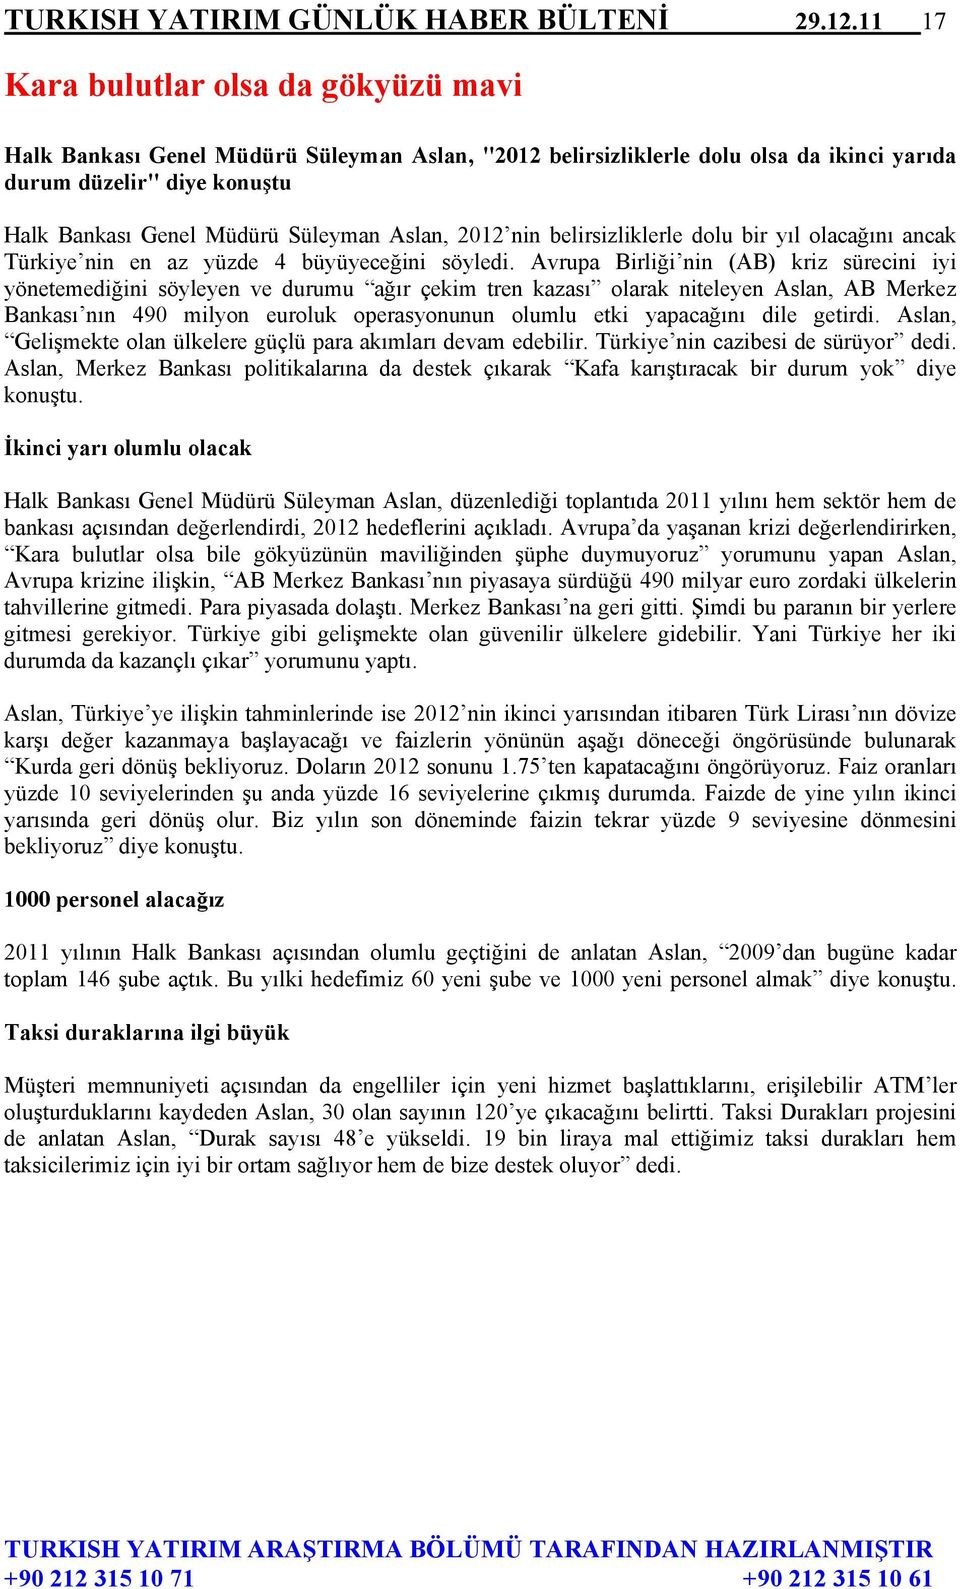 Aslan, 2012 nin belirsizliklerle dolu bir yıl olacağını ancak Türkiye nin en az yüzde 4 büyüyeceğini söyledi.